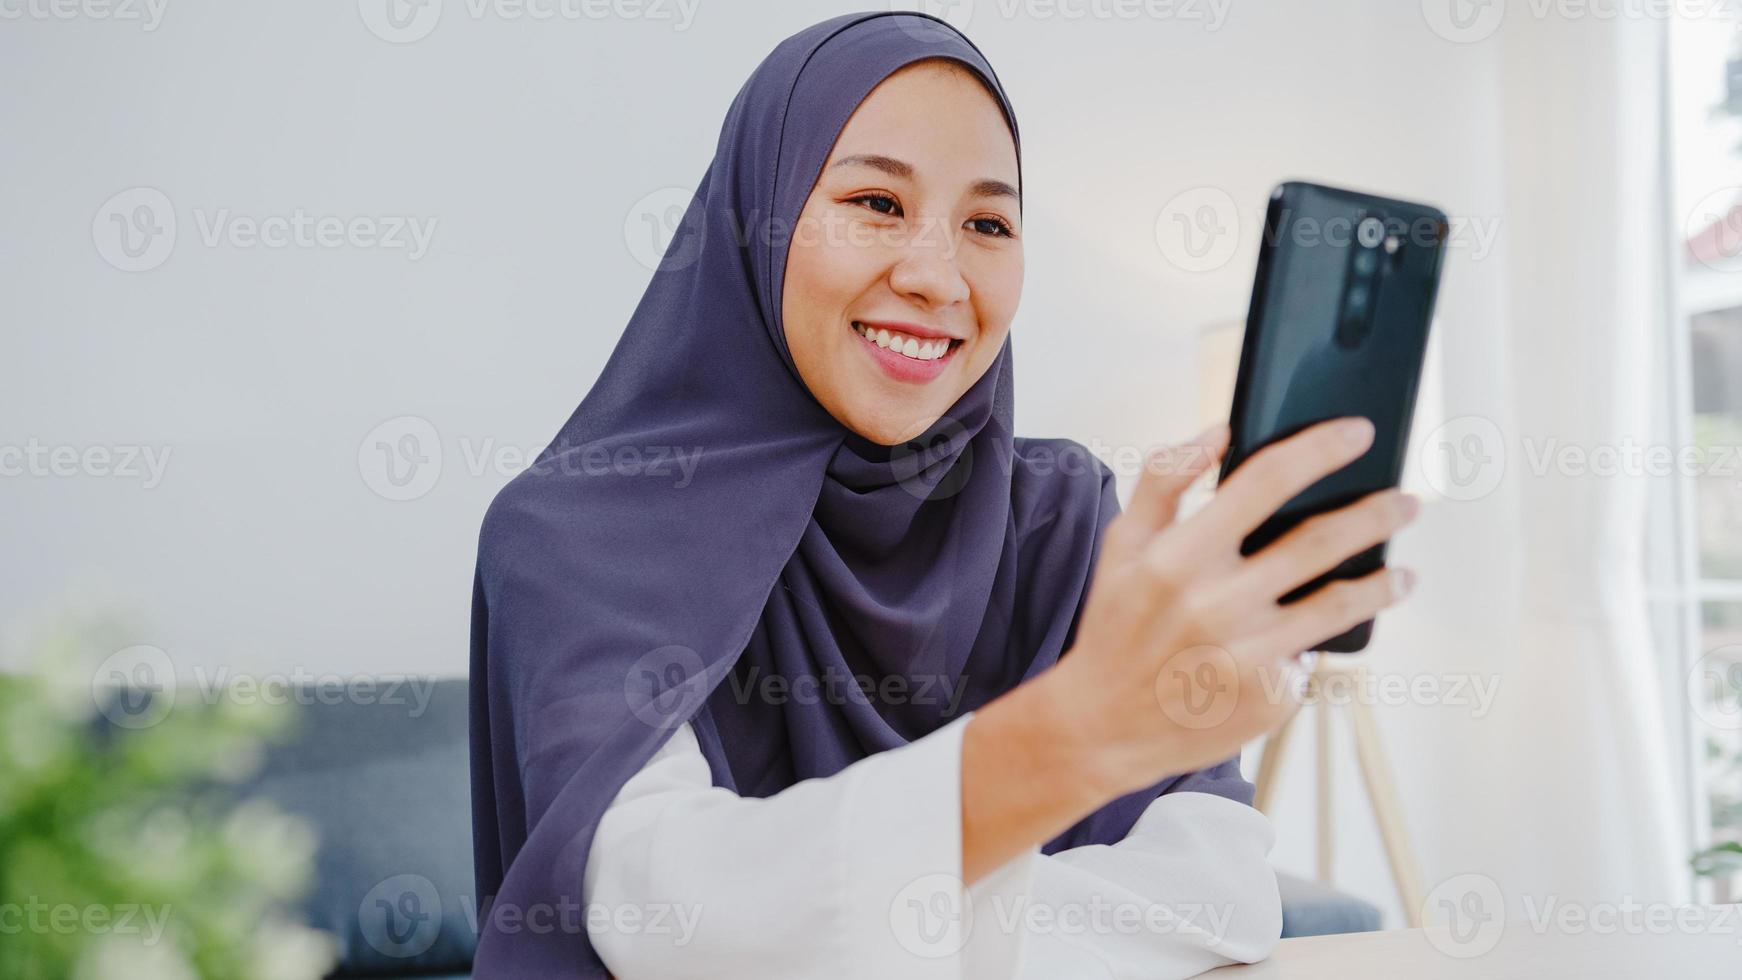 jonge azië moslim zakenvrouw met behulp van slimme telefoon praten met vriend door videochat brainstorm online vergadering terwijl op afstand werken vanuit huis in de woonkamer. sociale afstand, quarantaine voor het coronavirus. foto